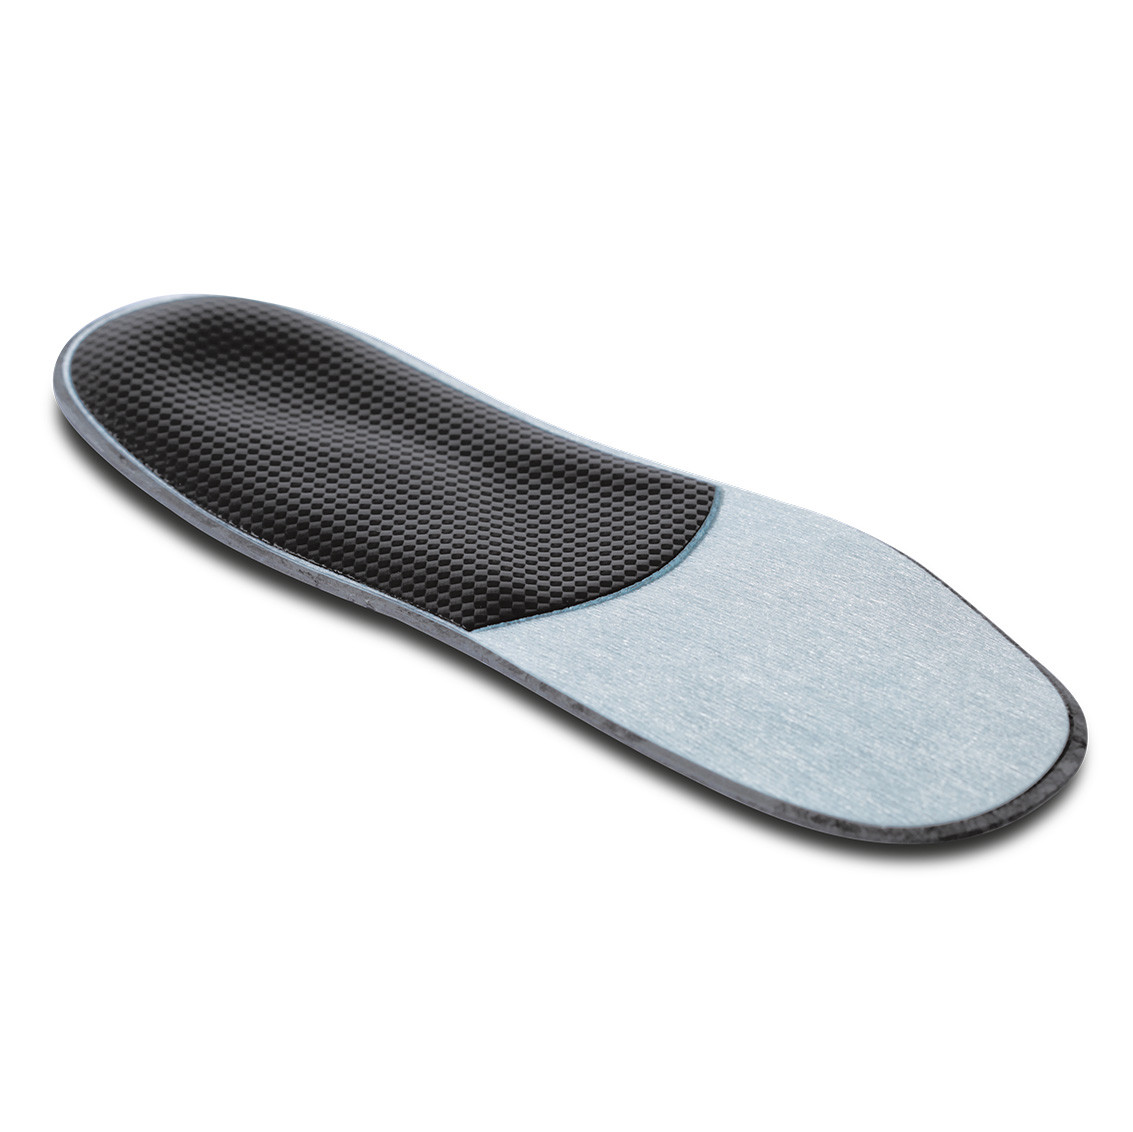 Halbfertiges Fußbett für Plattfüße aus Kunstharz zum Tiefziehen Größe 37/38 1 Paar